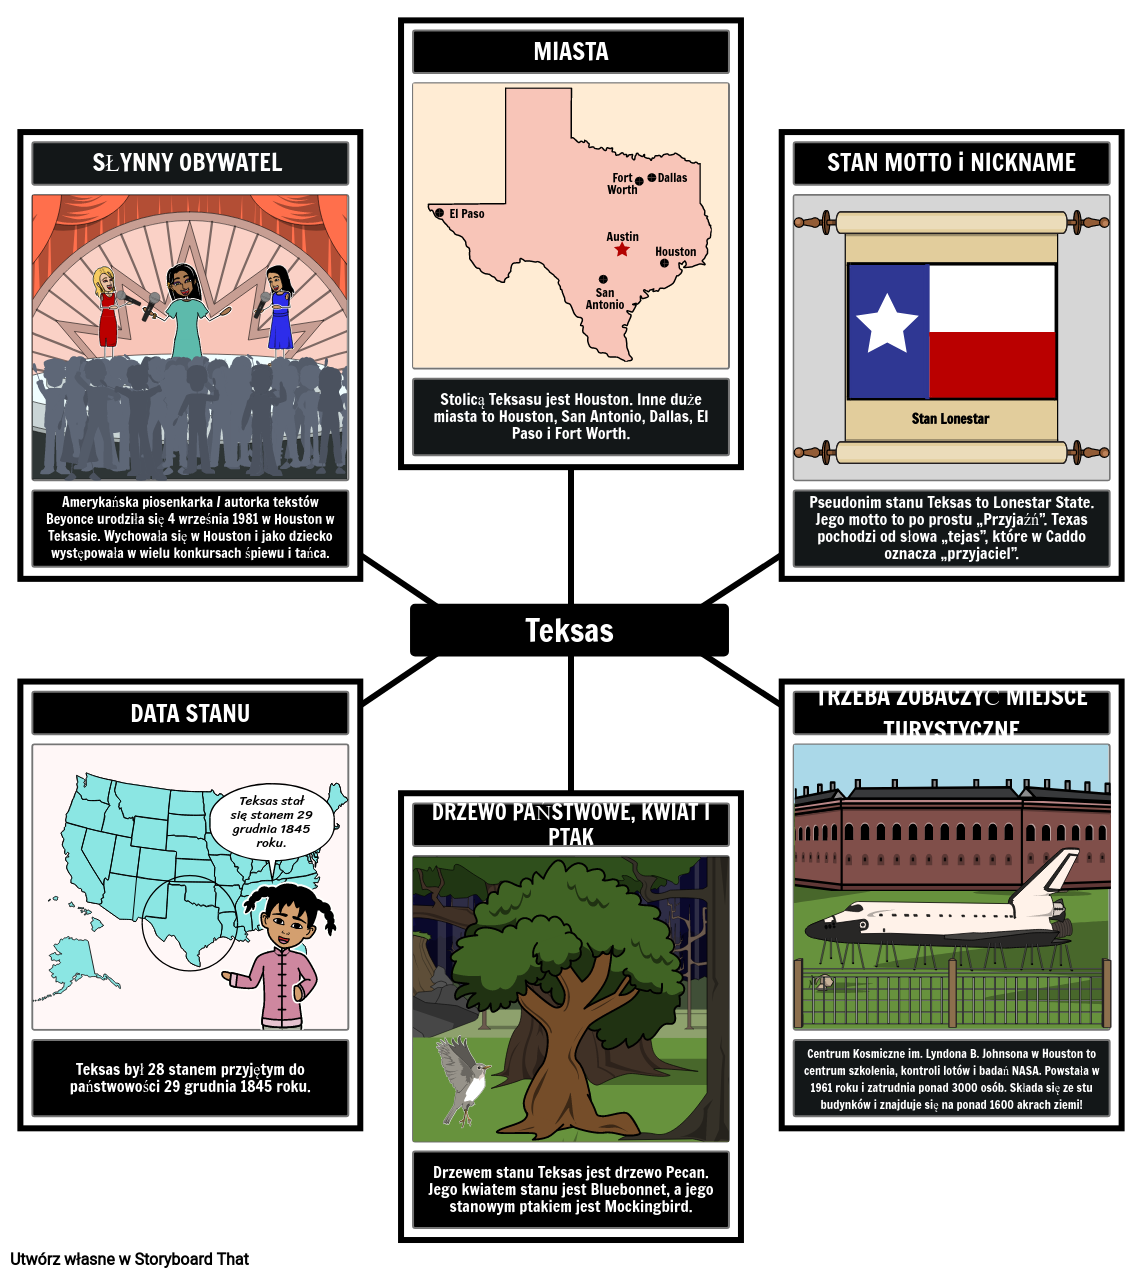 Informacje o Stanie Teksas